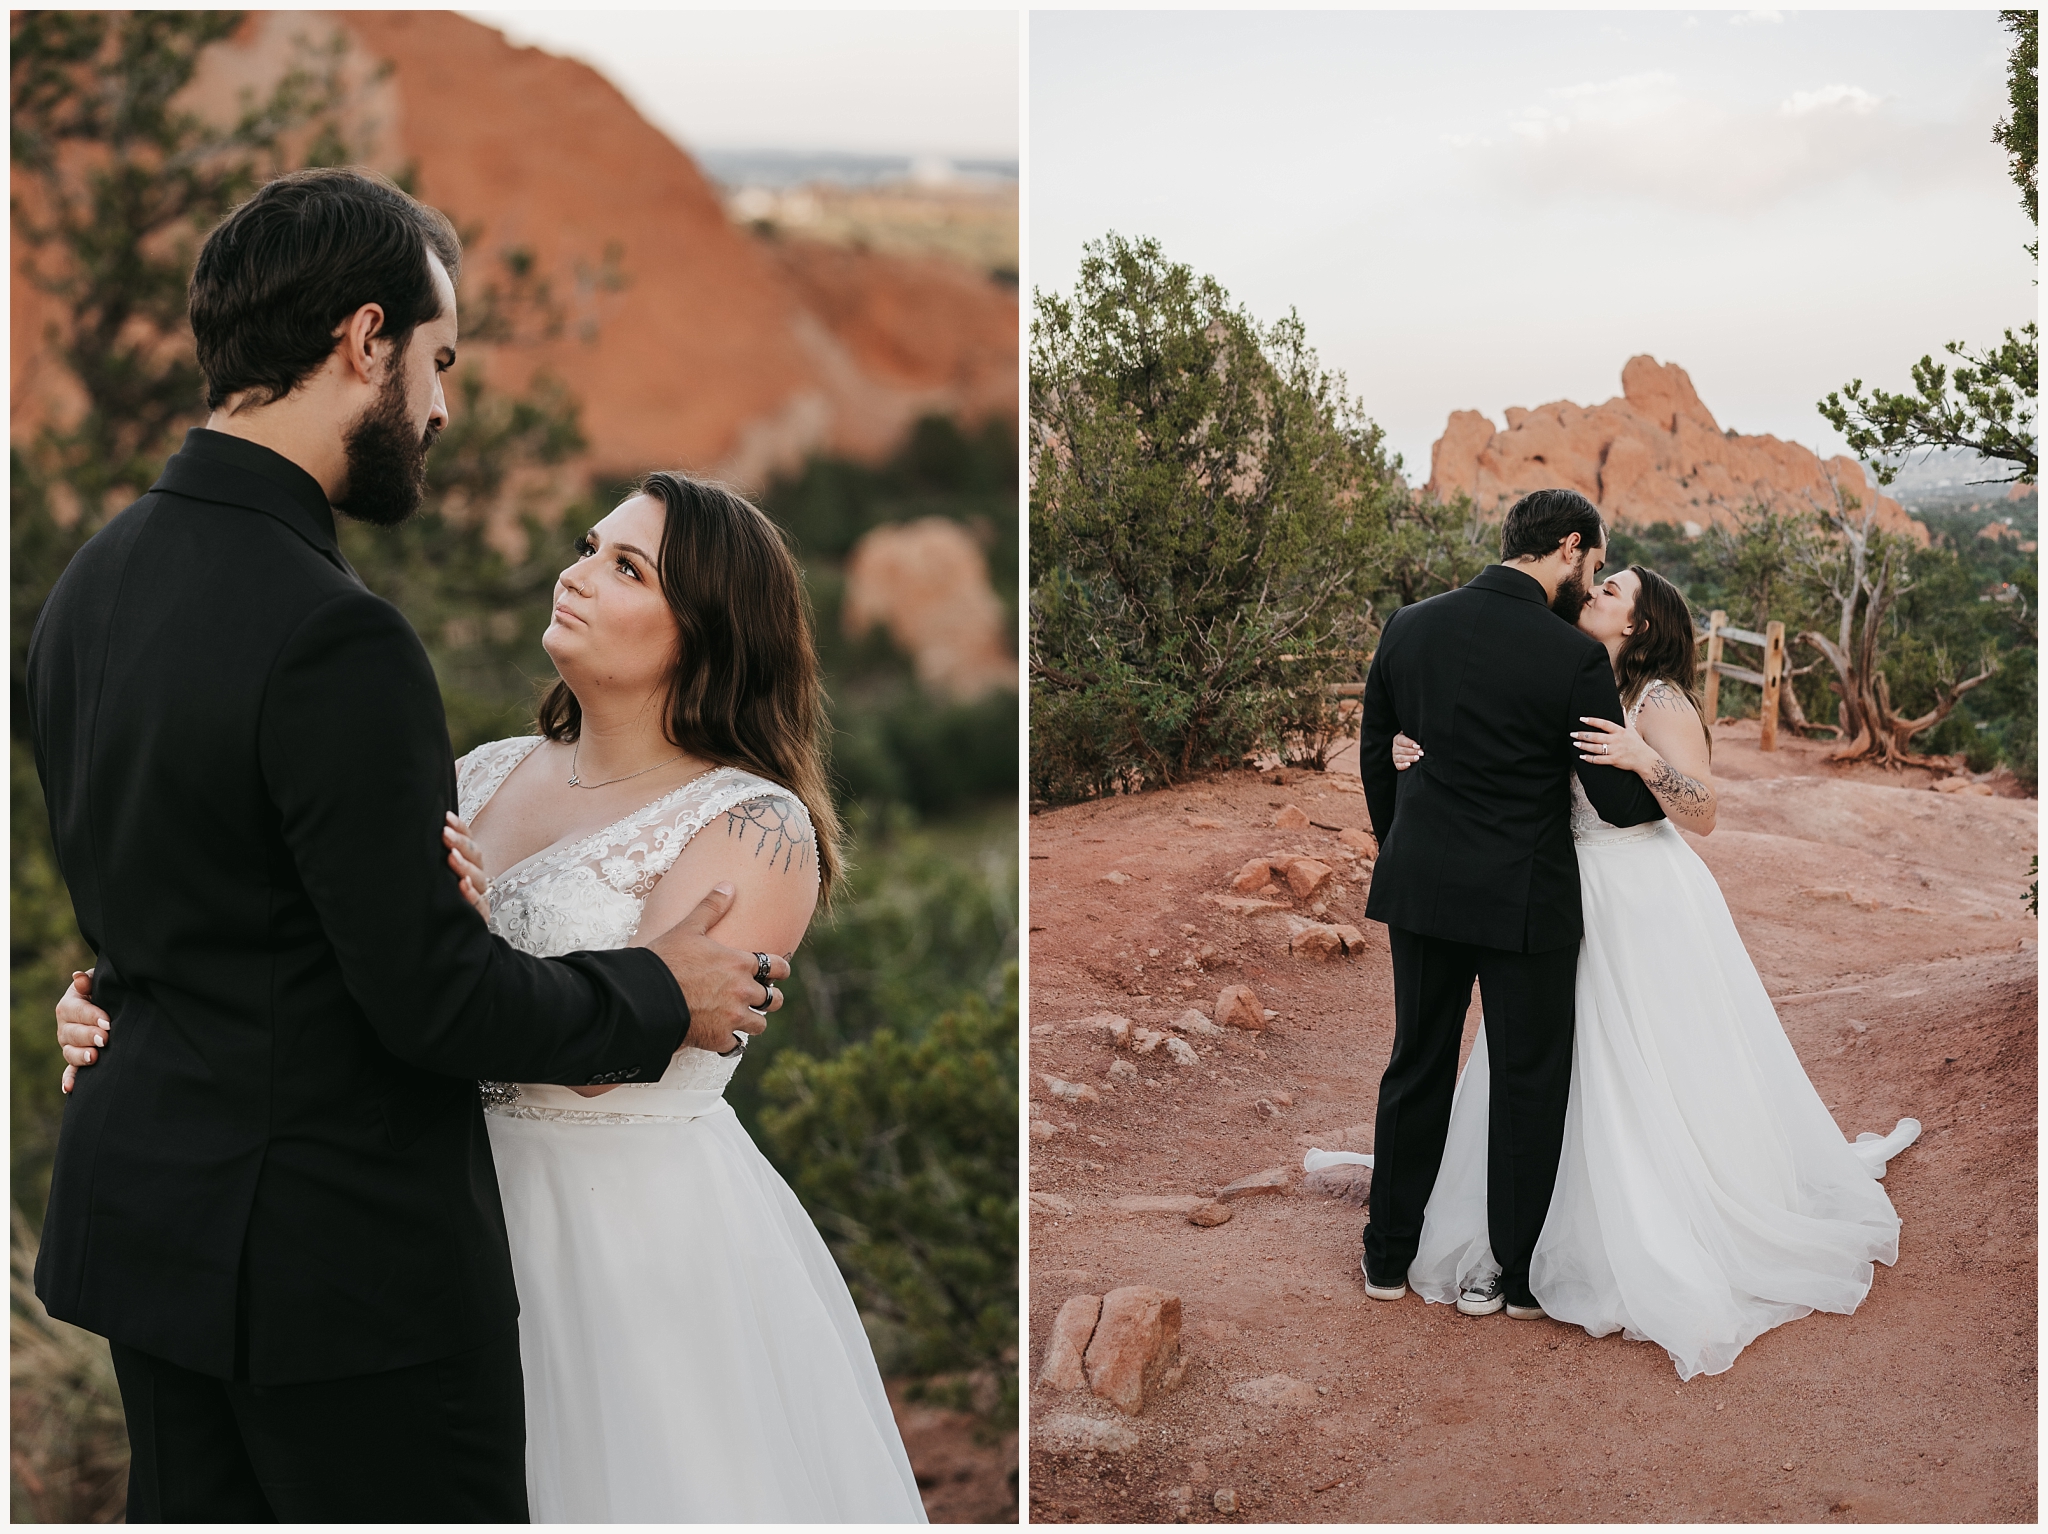 Beautiful elopement near Colorado Springs